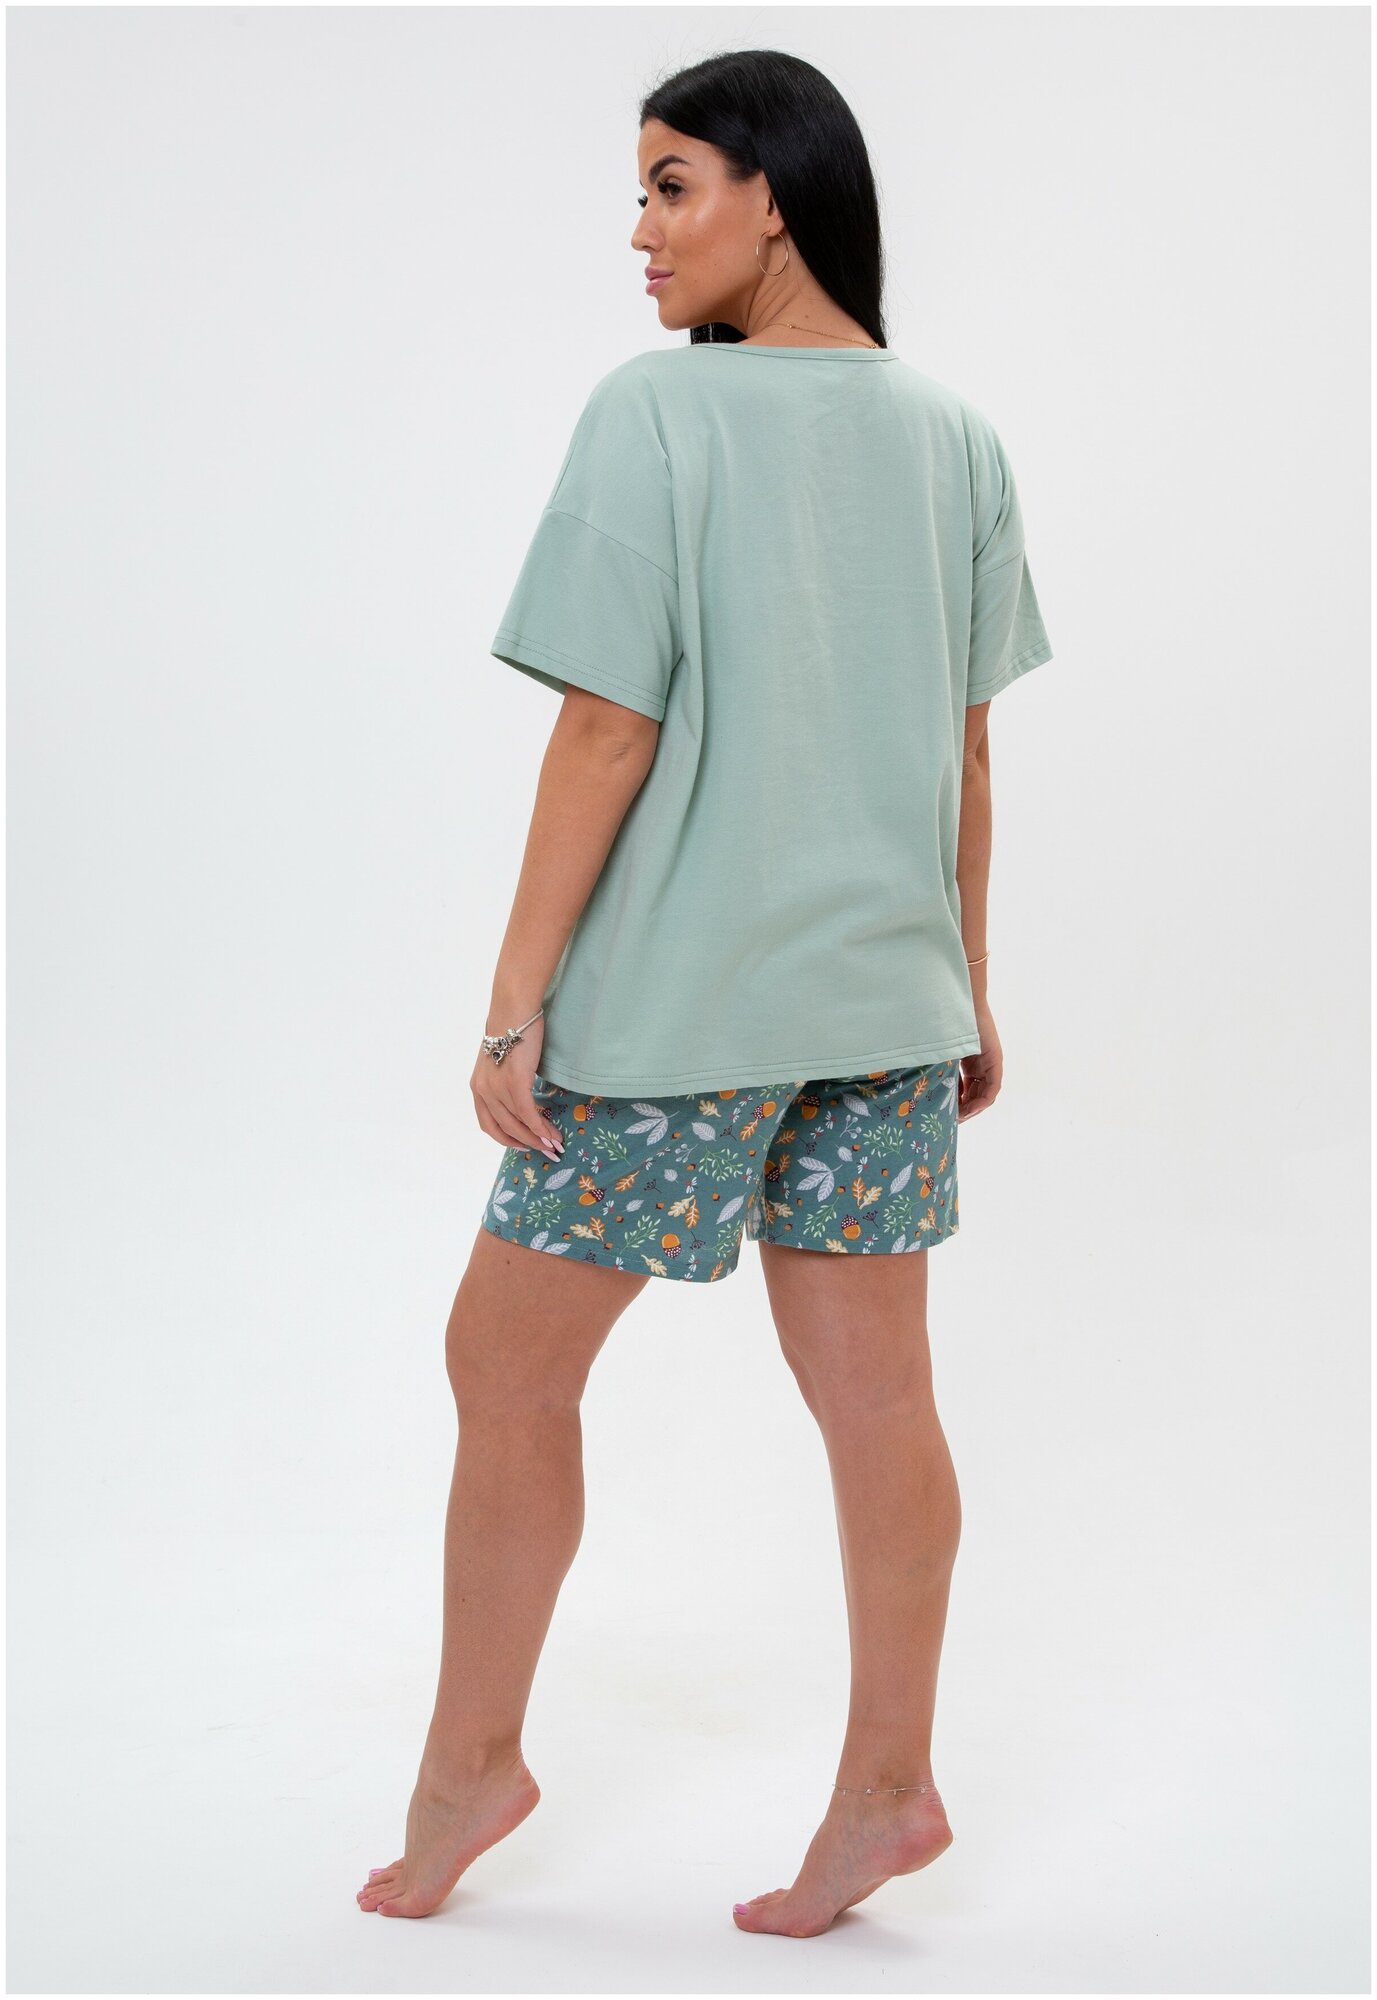 Пижама с шортами Modellini 1725 комплект для дома, зеленый - фотография № 6